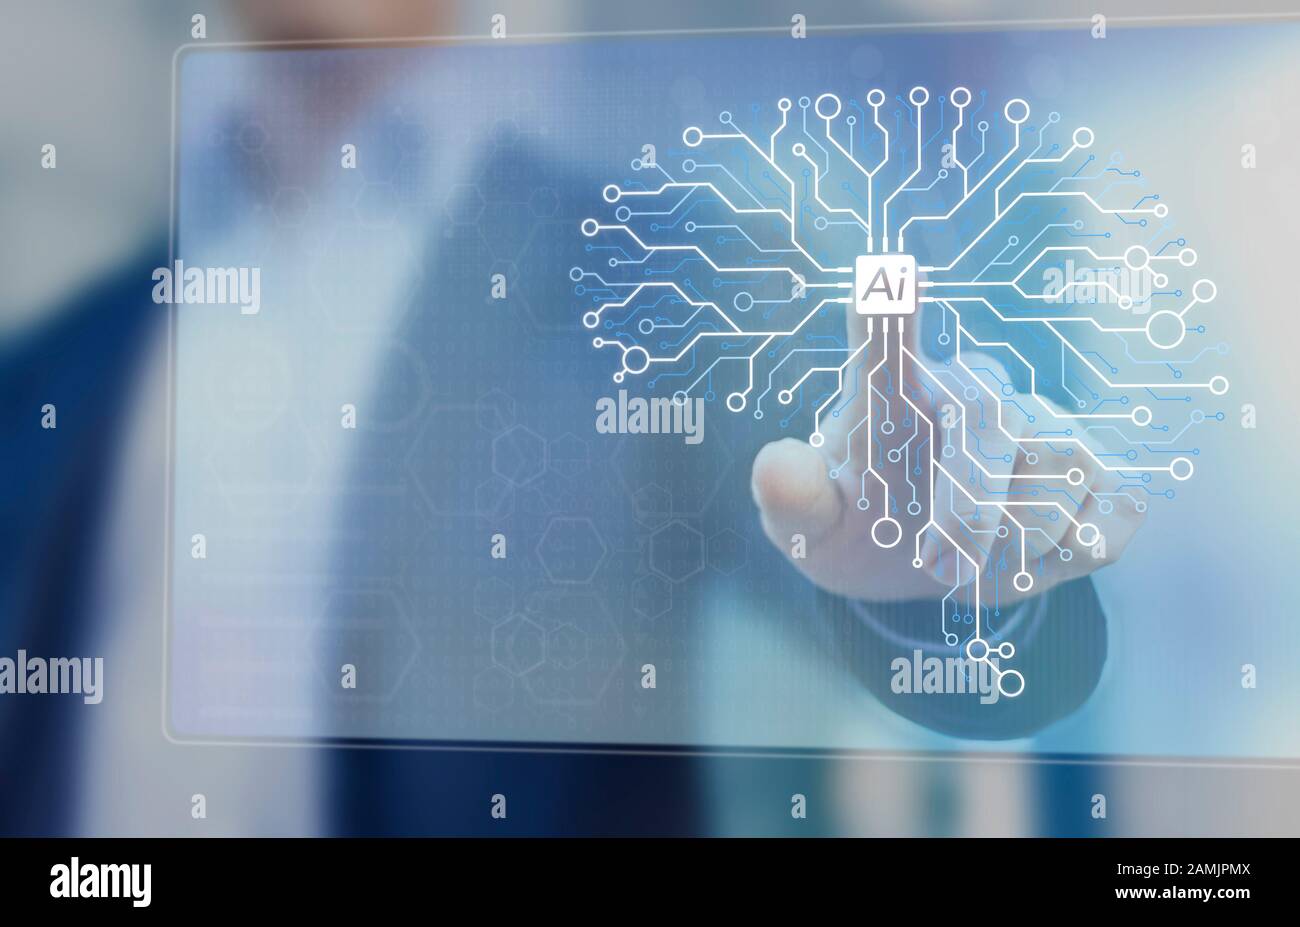 Tecnología de Inteligencia Artificial y Aprendizaje de Máquinas para automatizar procesos, concepto con ingeniero de IA trabajando en red neural cerebral de circuito electrónico Foto de stock